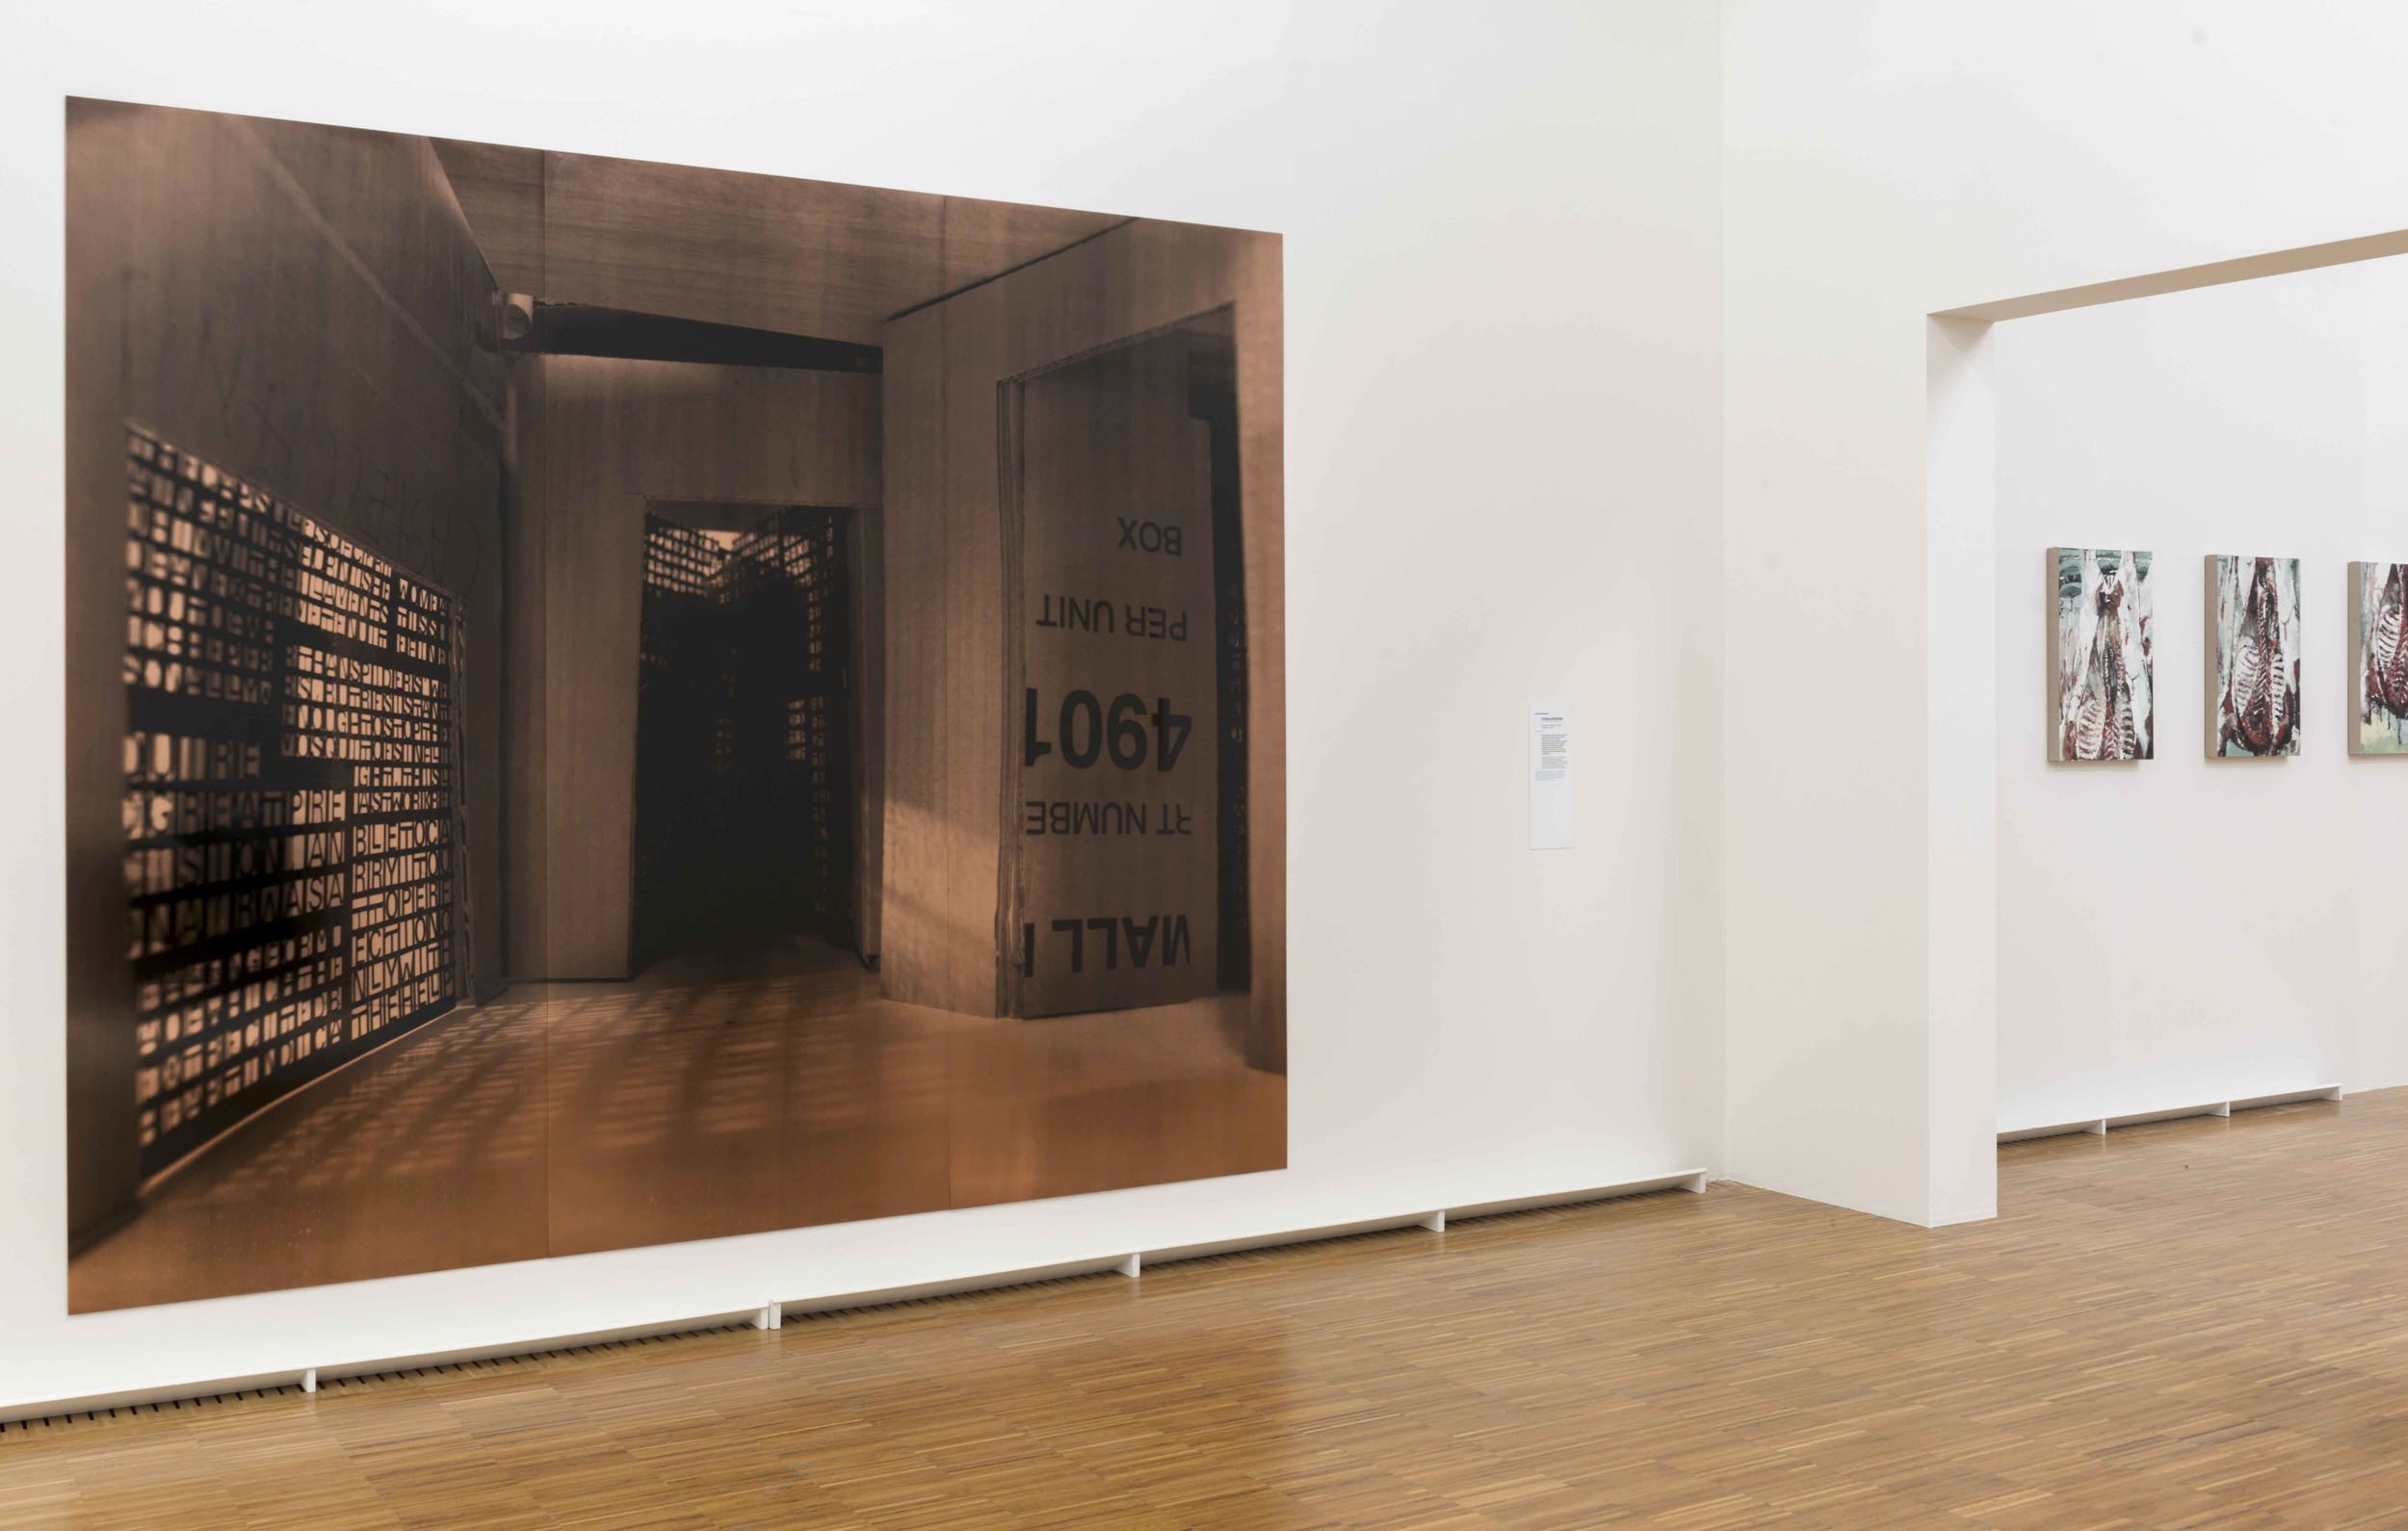   De Picasso à Warhol , Une Décennie d'Acquisitions, Musée de Grenoble (FR)&nbsp;2015. Curator Guy Tosatto.&nbsp;&nbsp;Artists in view: Cristina Iglesias, Philippe Cognee 